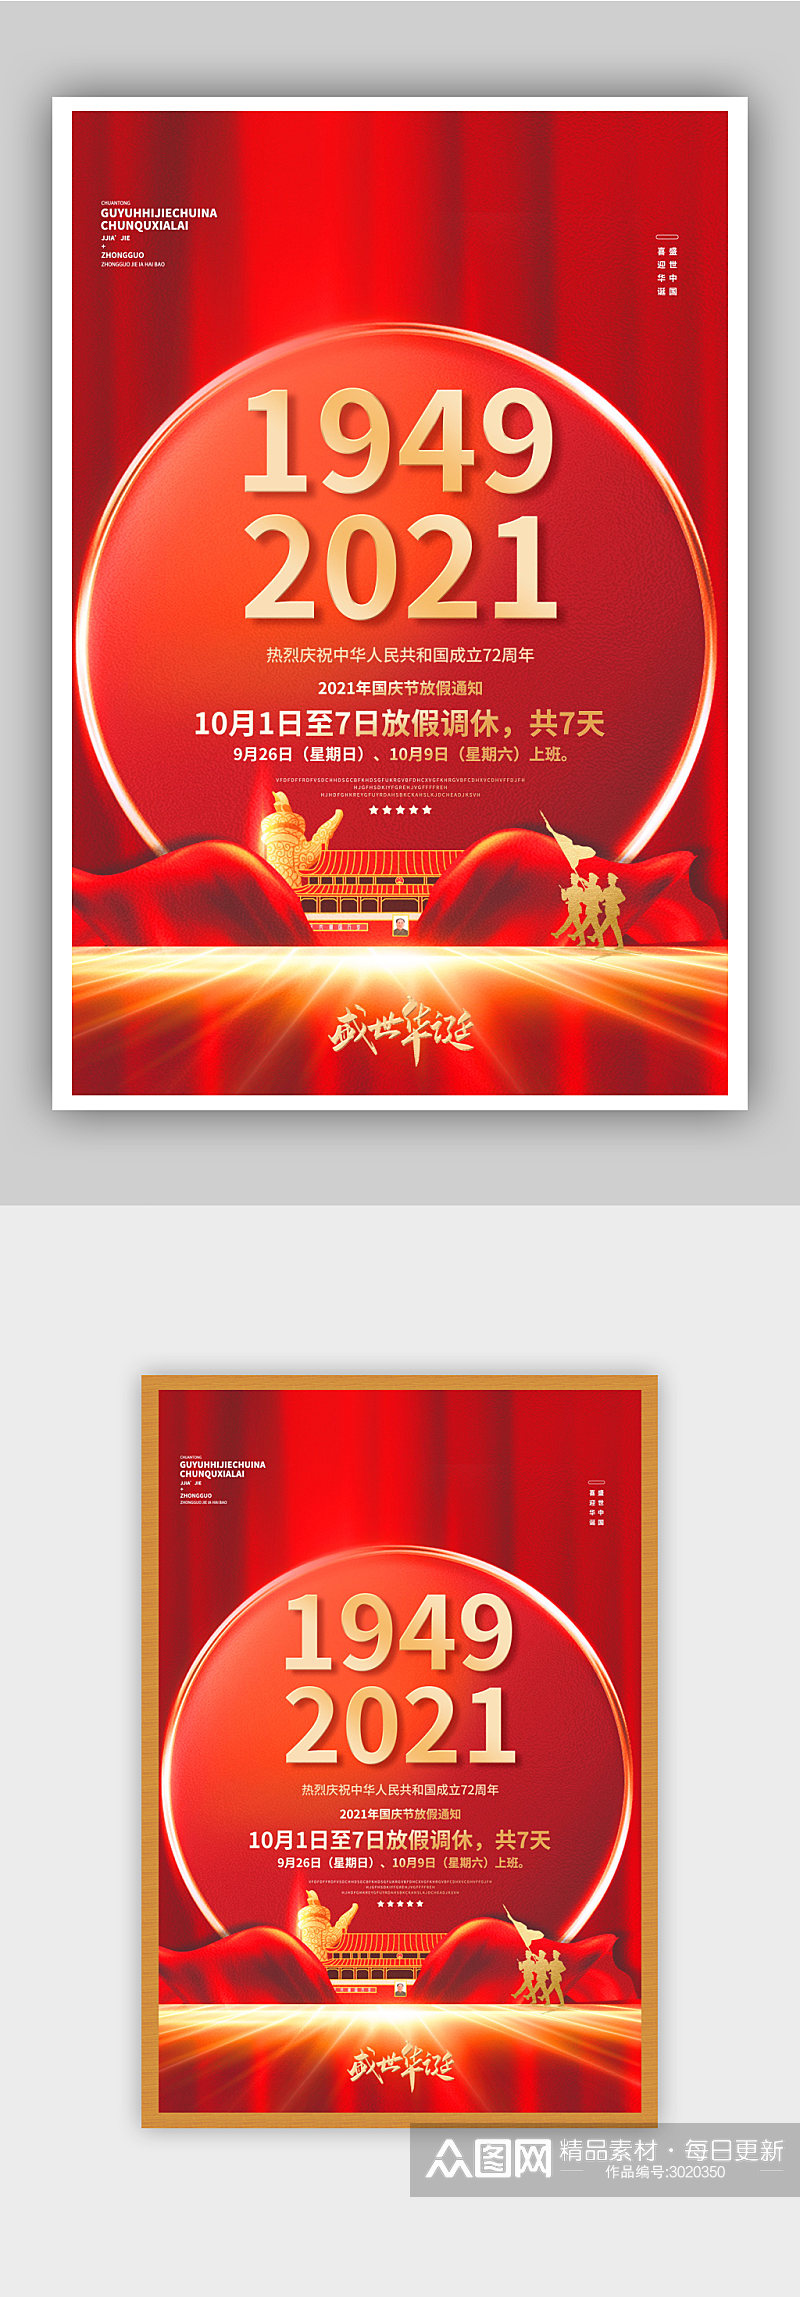 红色大气国庆节假期通知创意海报素材